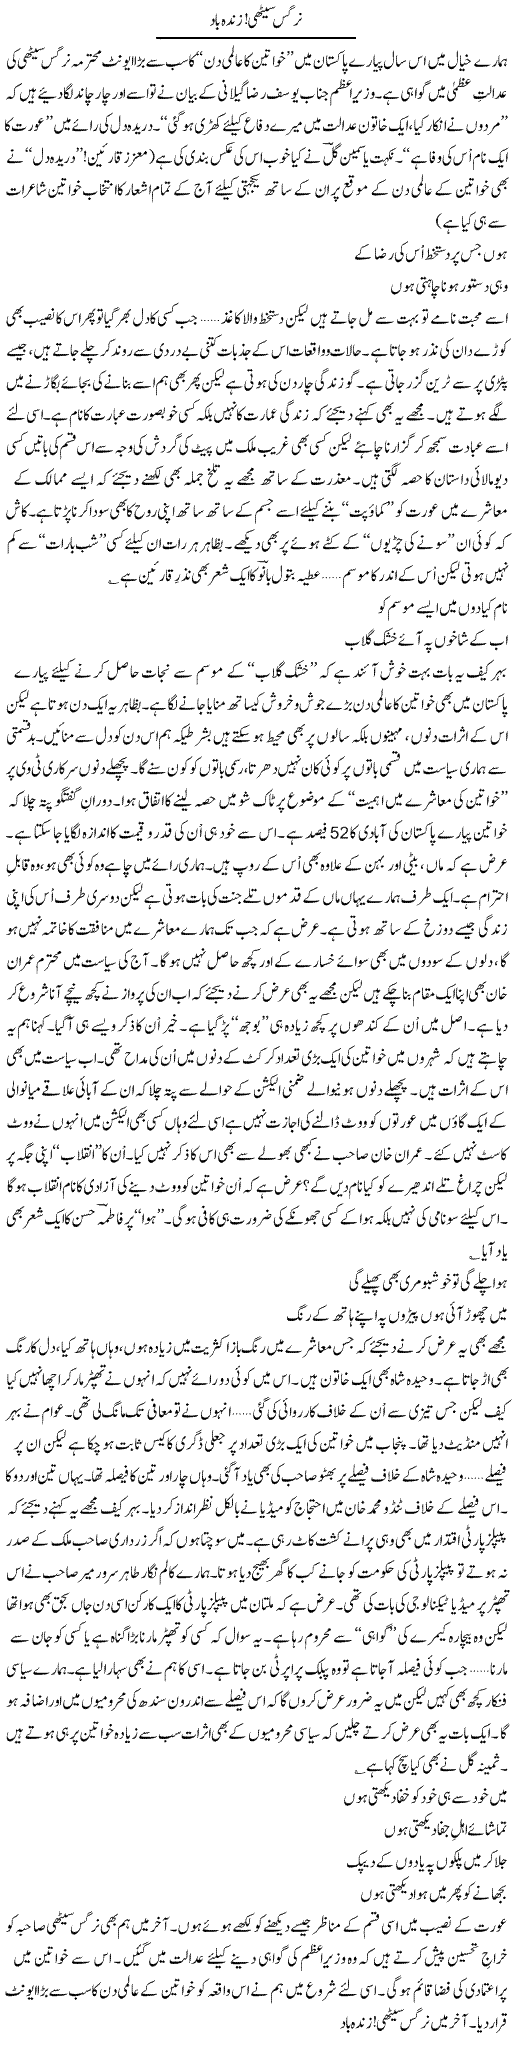 Nargis Zindabad Express Column Ijaz Khan 13 March 2012